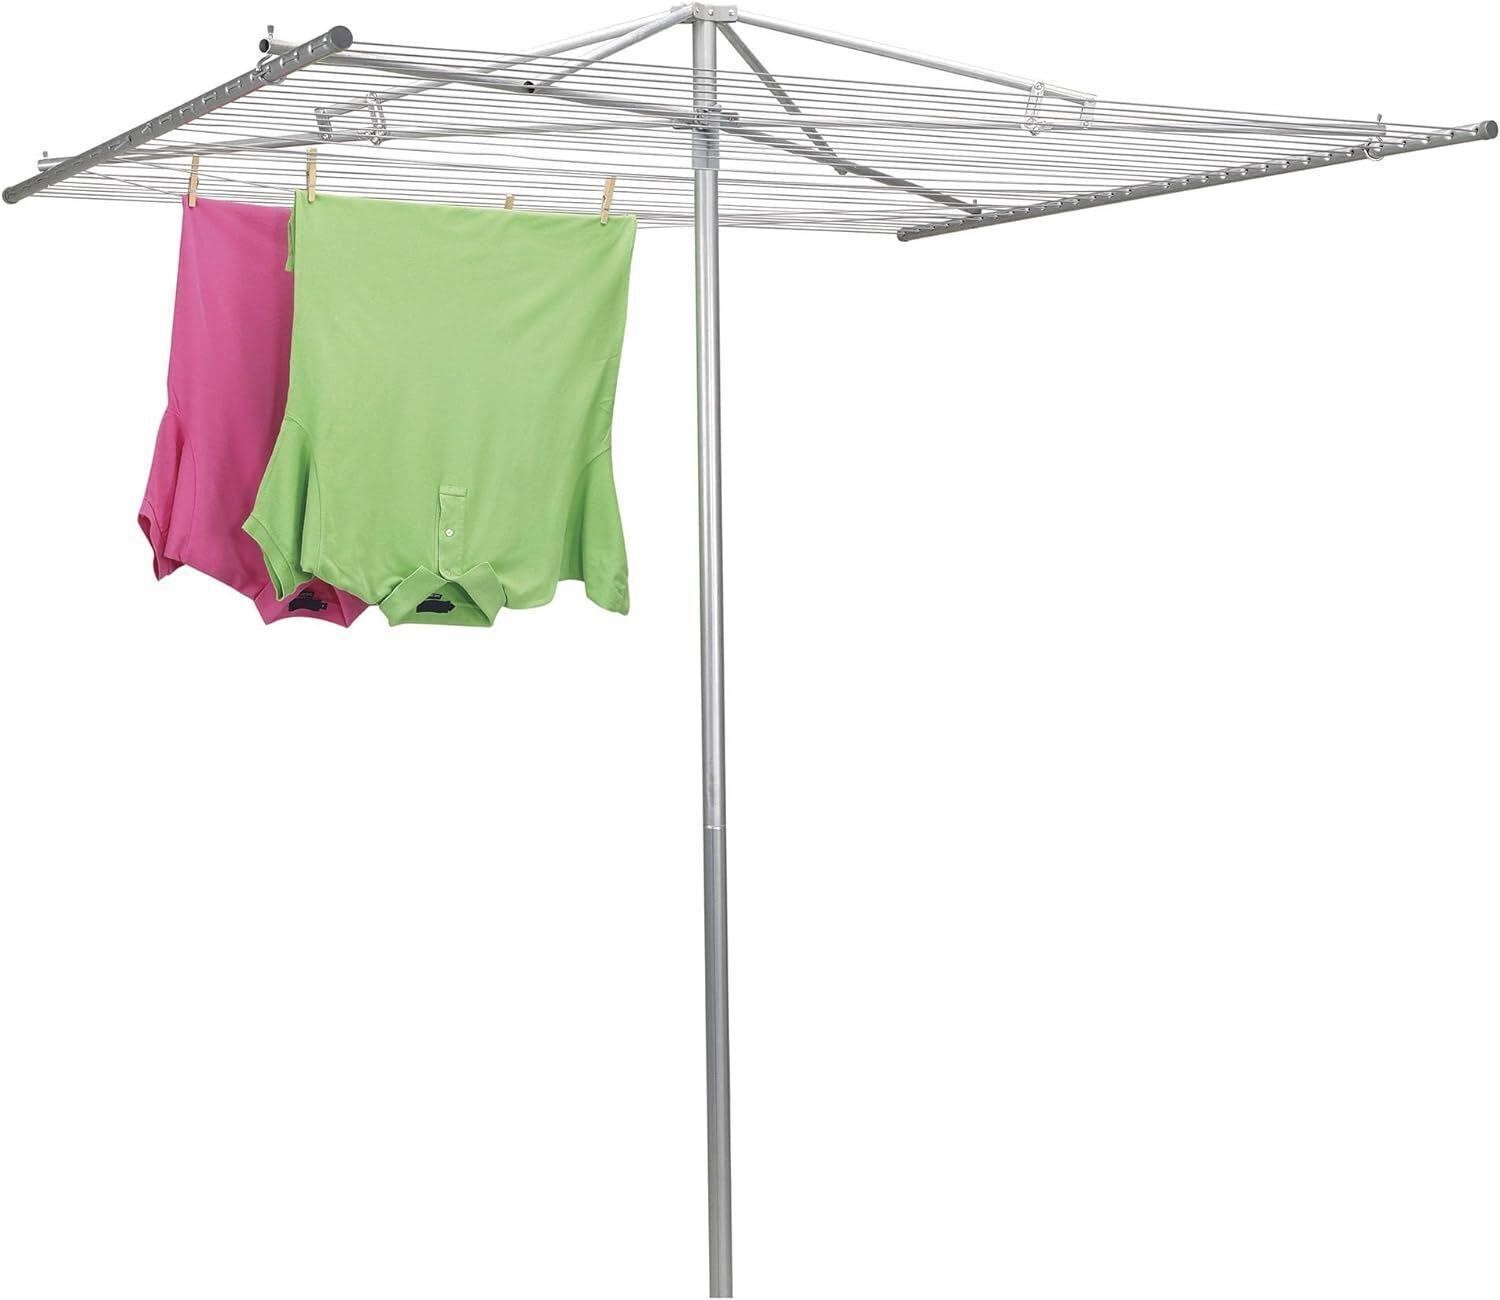 182' Clothesline Outdoor Umbrella Drying Rack